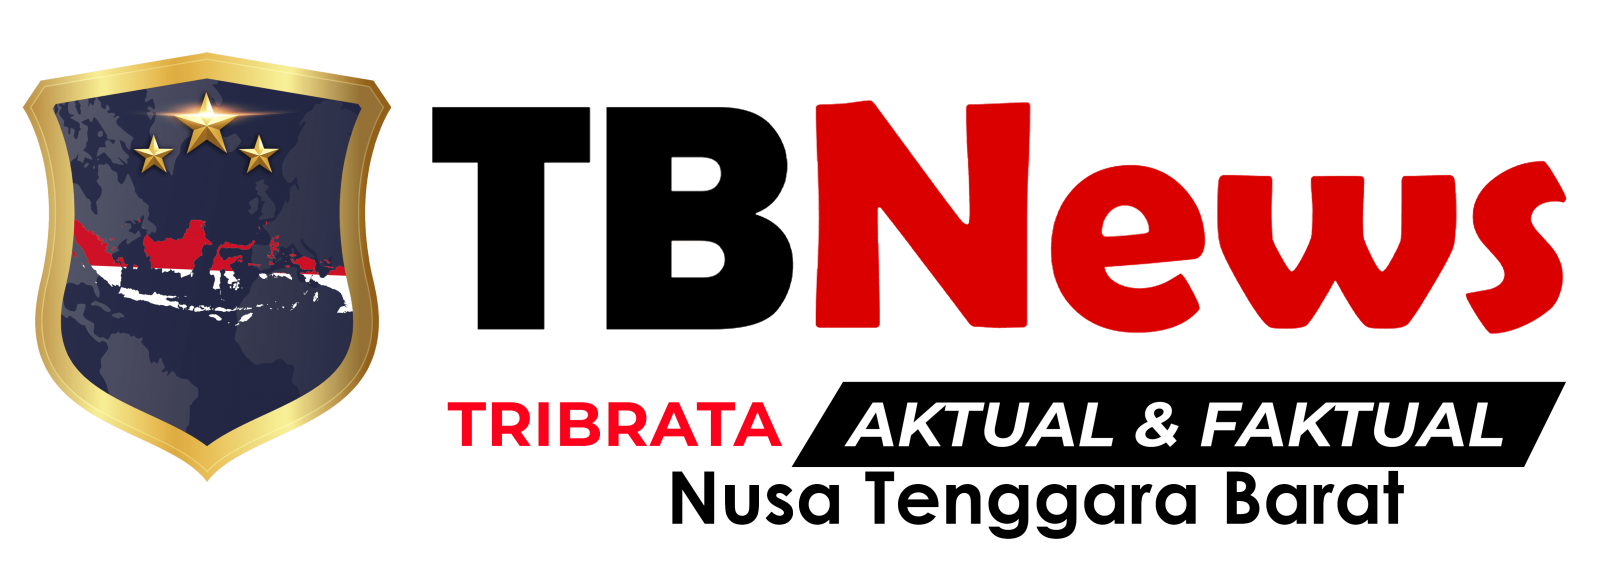 tribatanews ntb logo